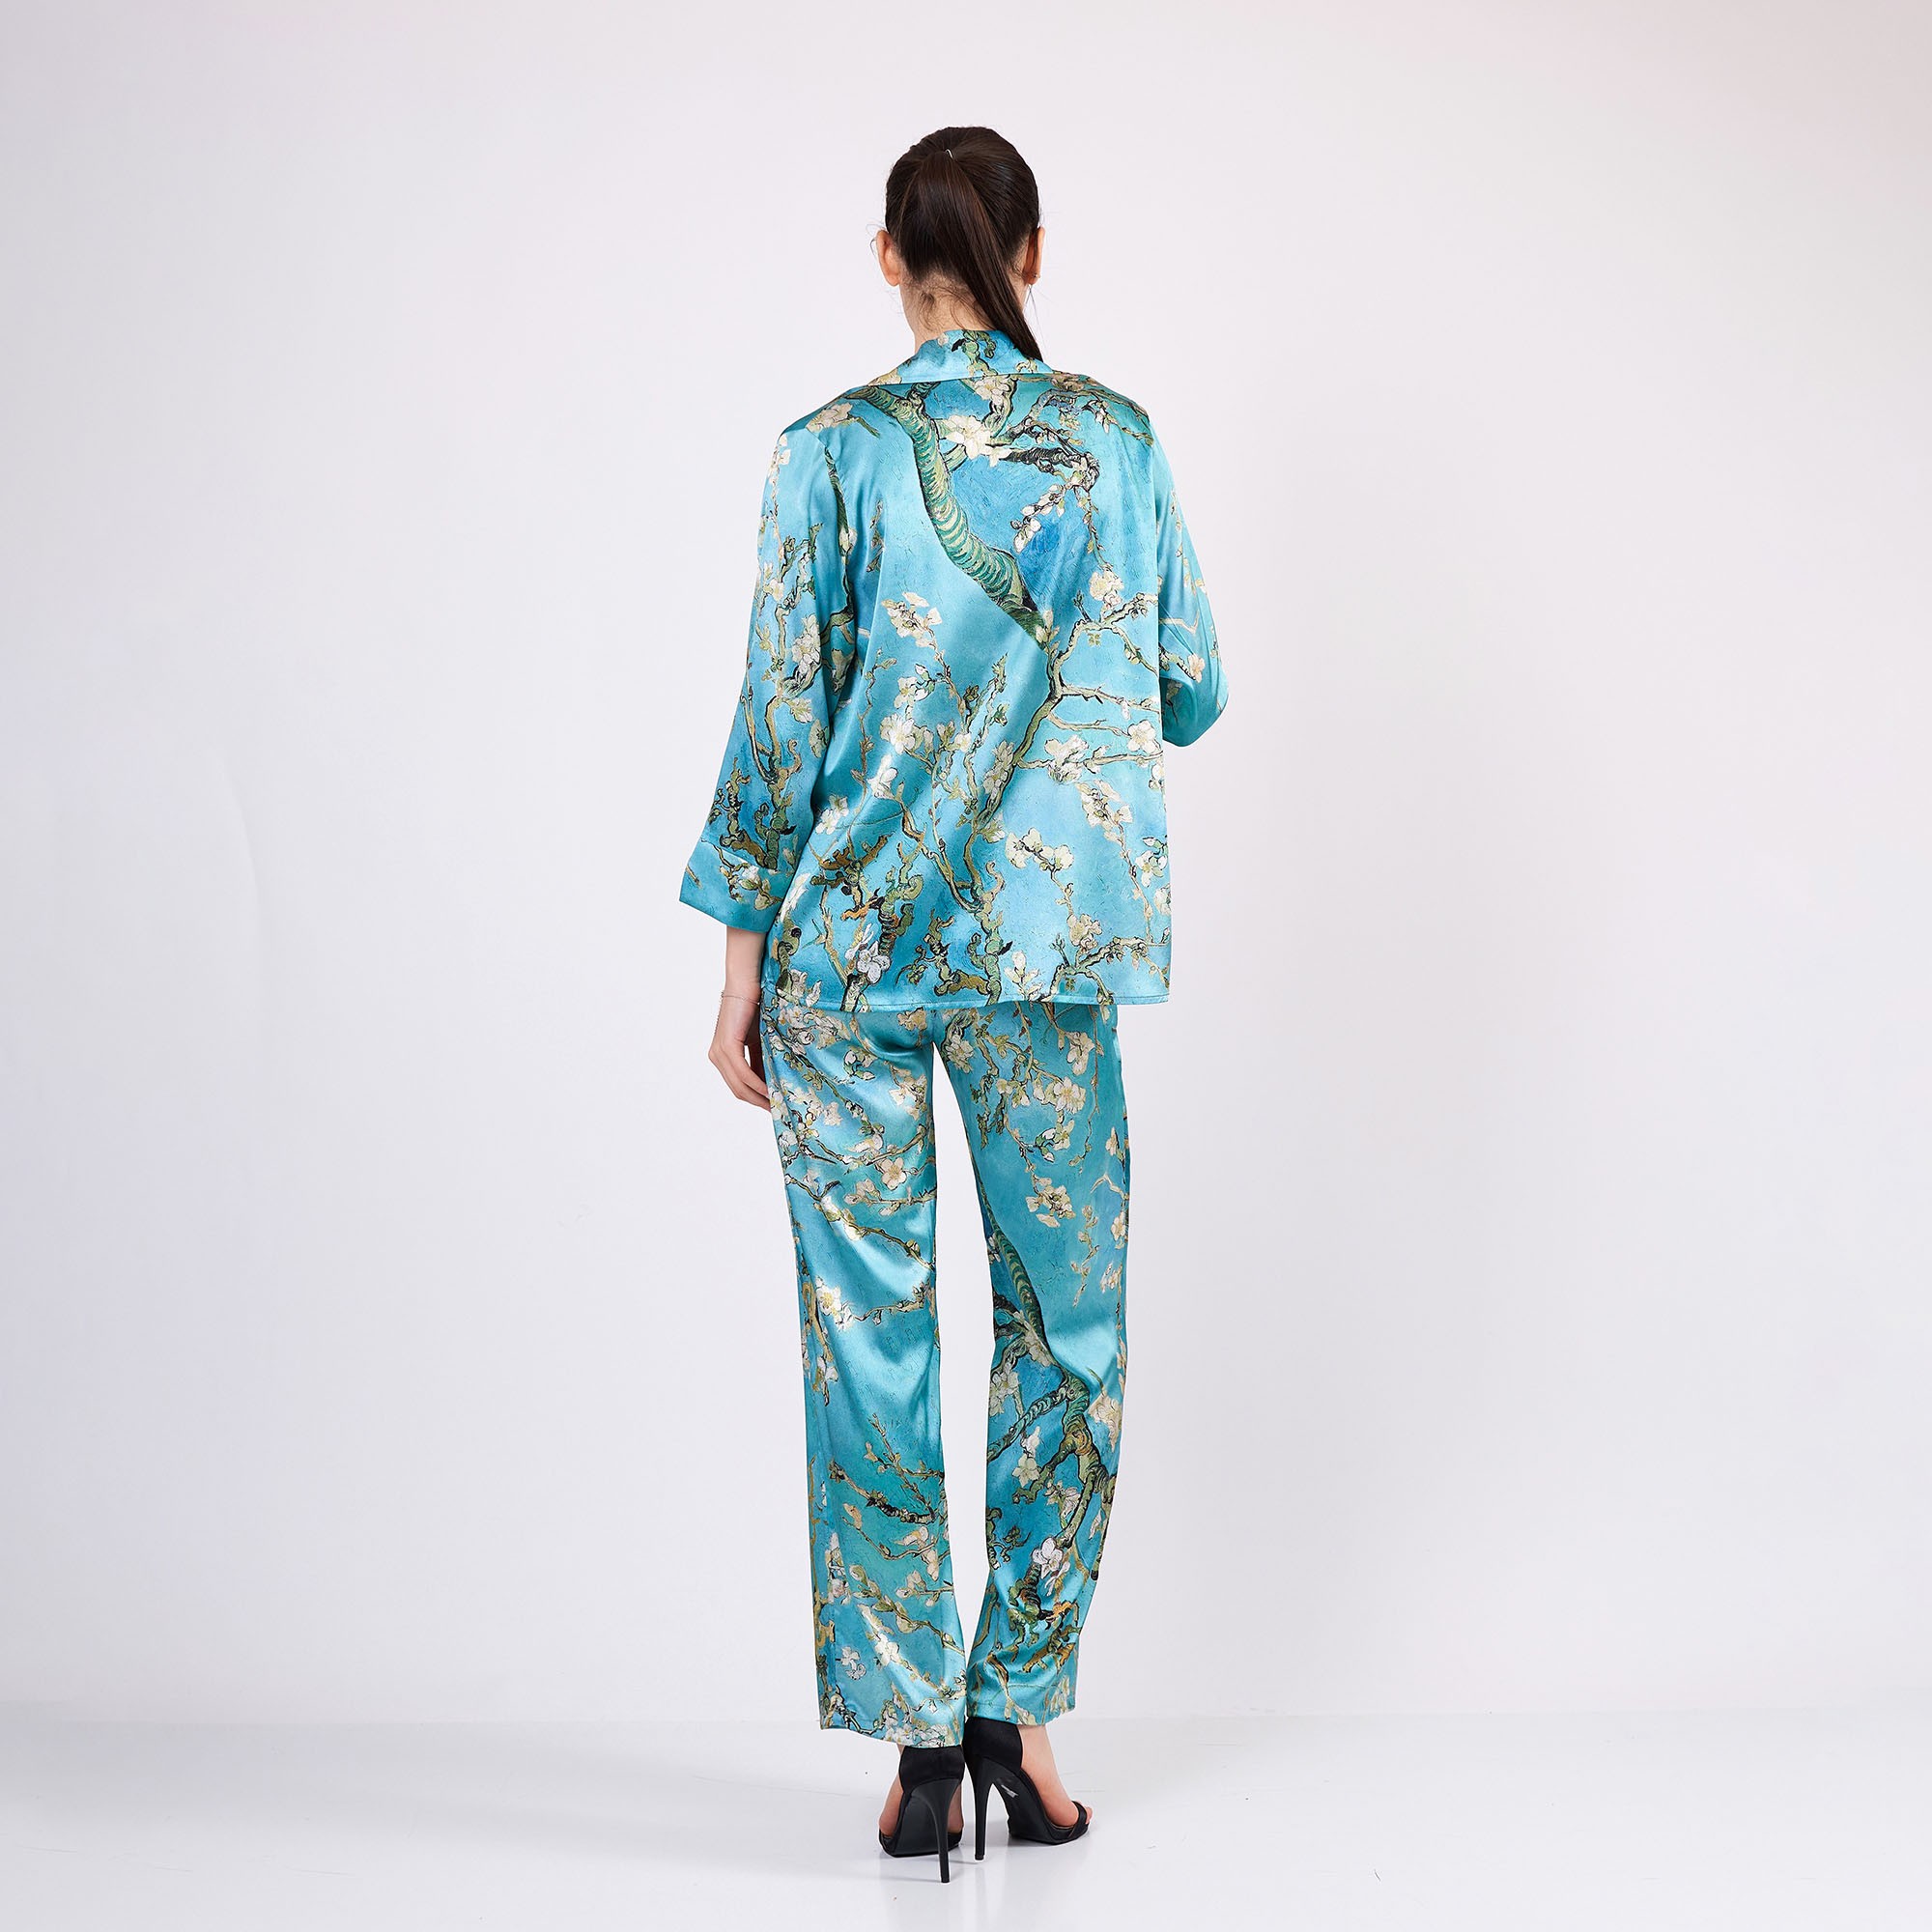 Saf İpek Gömlek-Pantolon Takım/Pijama Takımı | Turkuaz Van Gogh Badem Ağacı | Nomads Felt